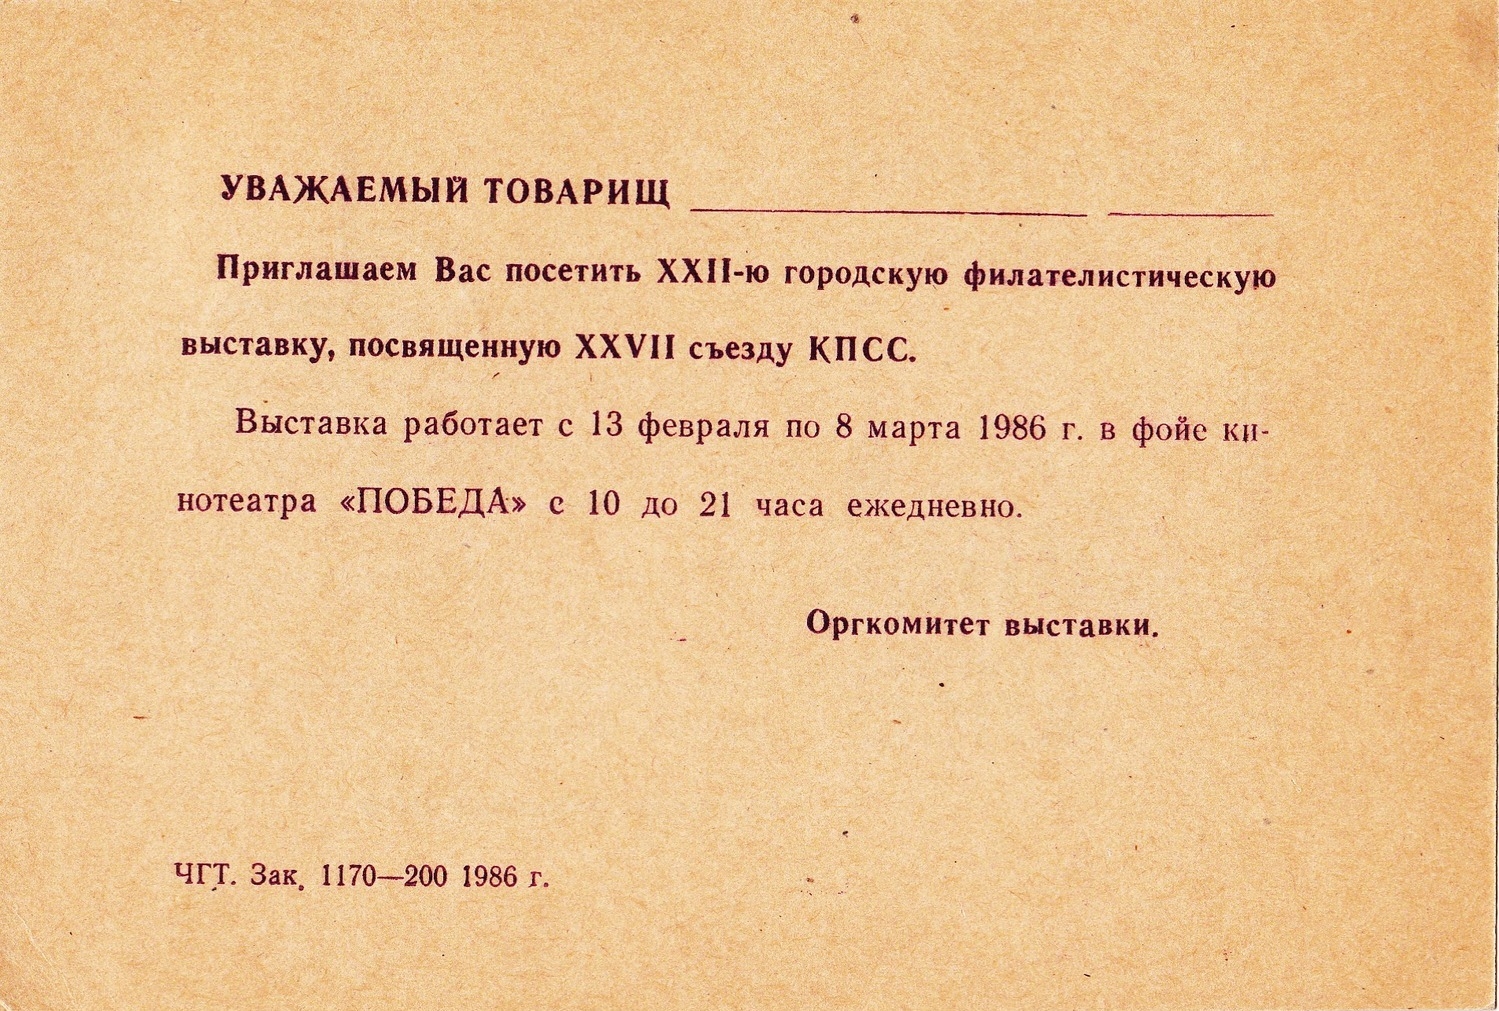 Запрошення на філатилістичну виставку у м. Червоноград. 1986